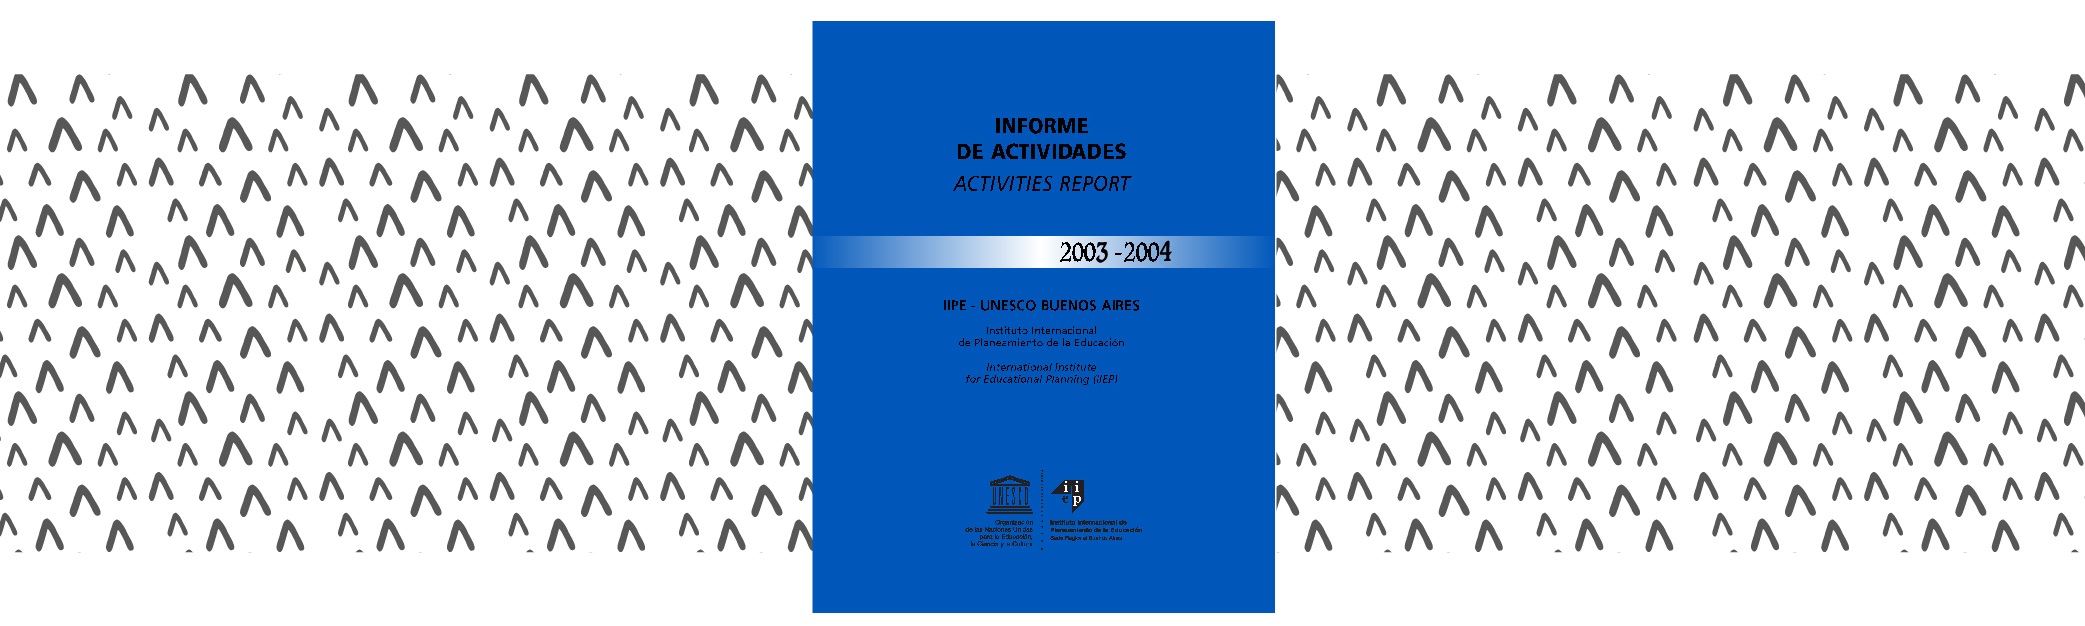 Informe de actividades 2003